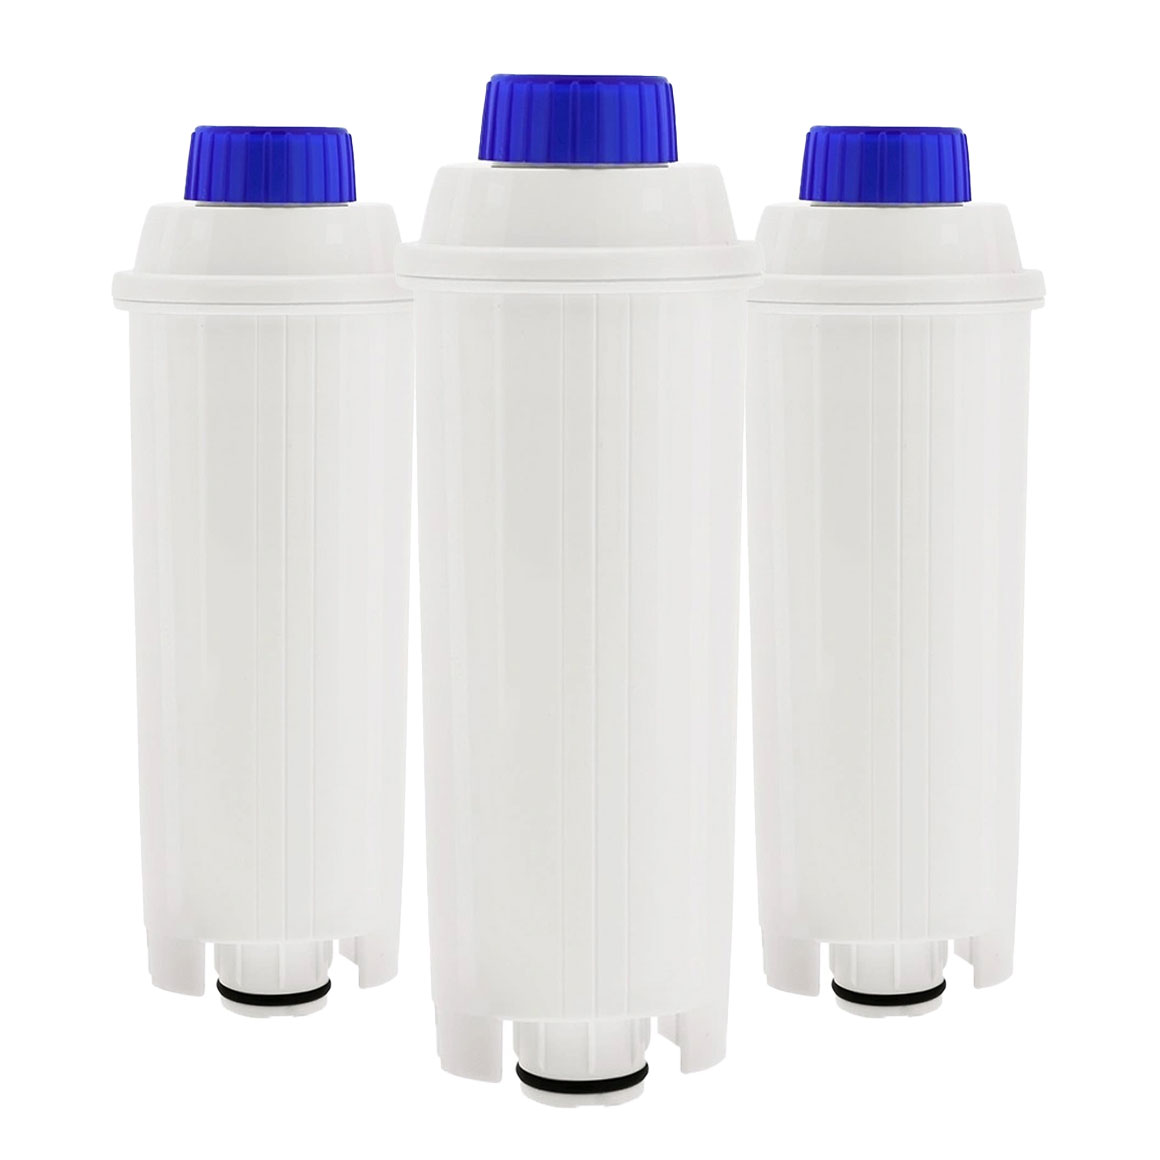 DLSC002 waterfilter voor De'Longhi ECAM 3 stuks (eigen merk)